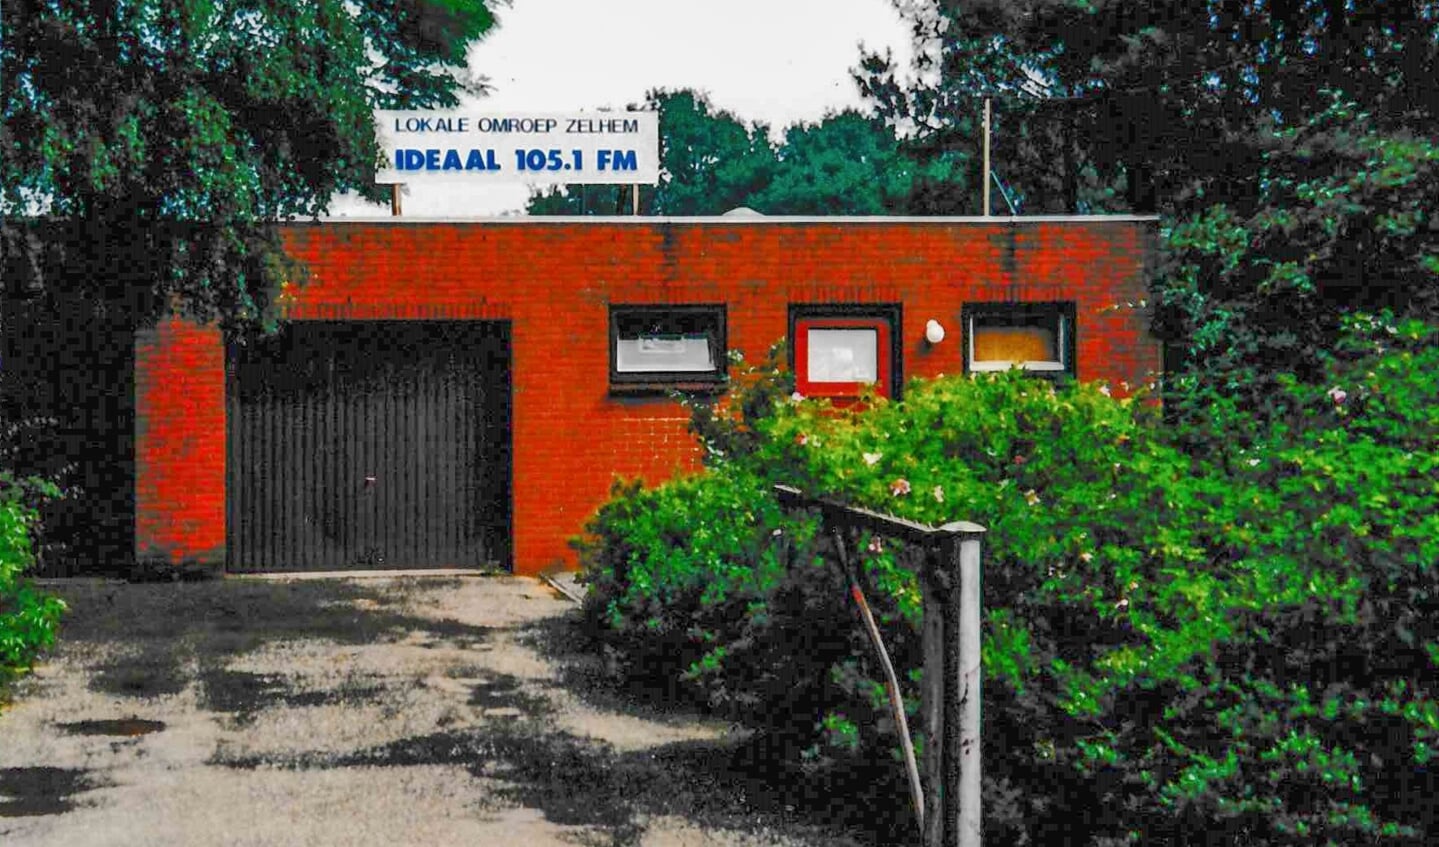 De eerste studio van Radio Ideaal, dertig jaar geleden, in de garage van Dennenlust. Foto: Archief Radio Ideaal